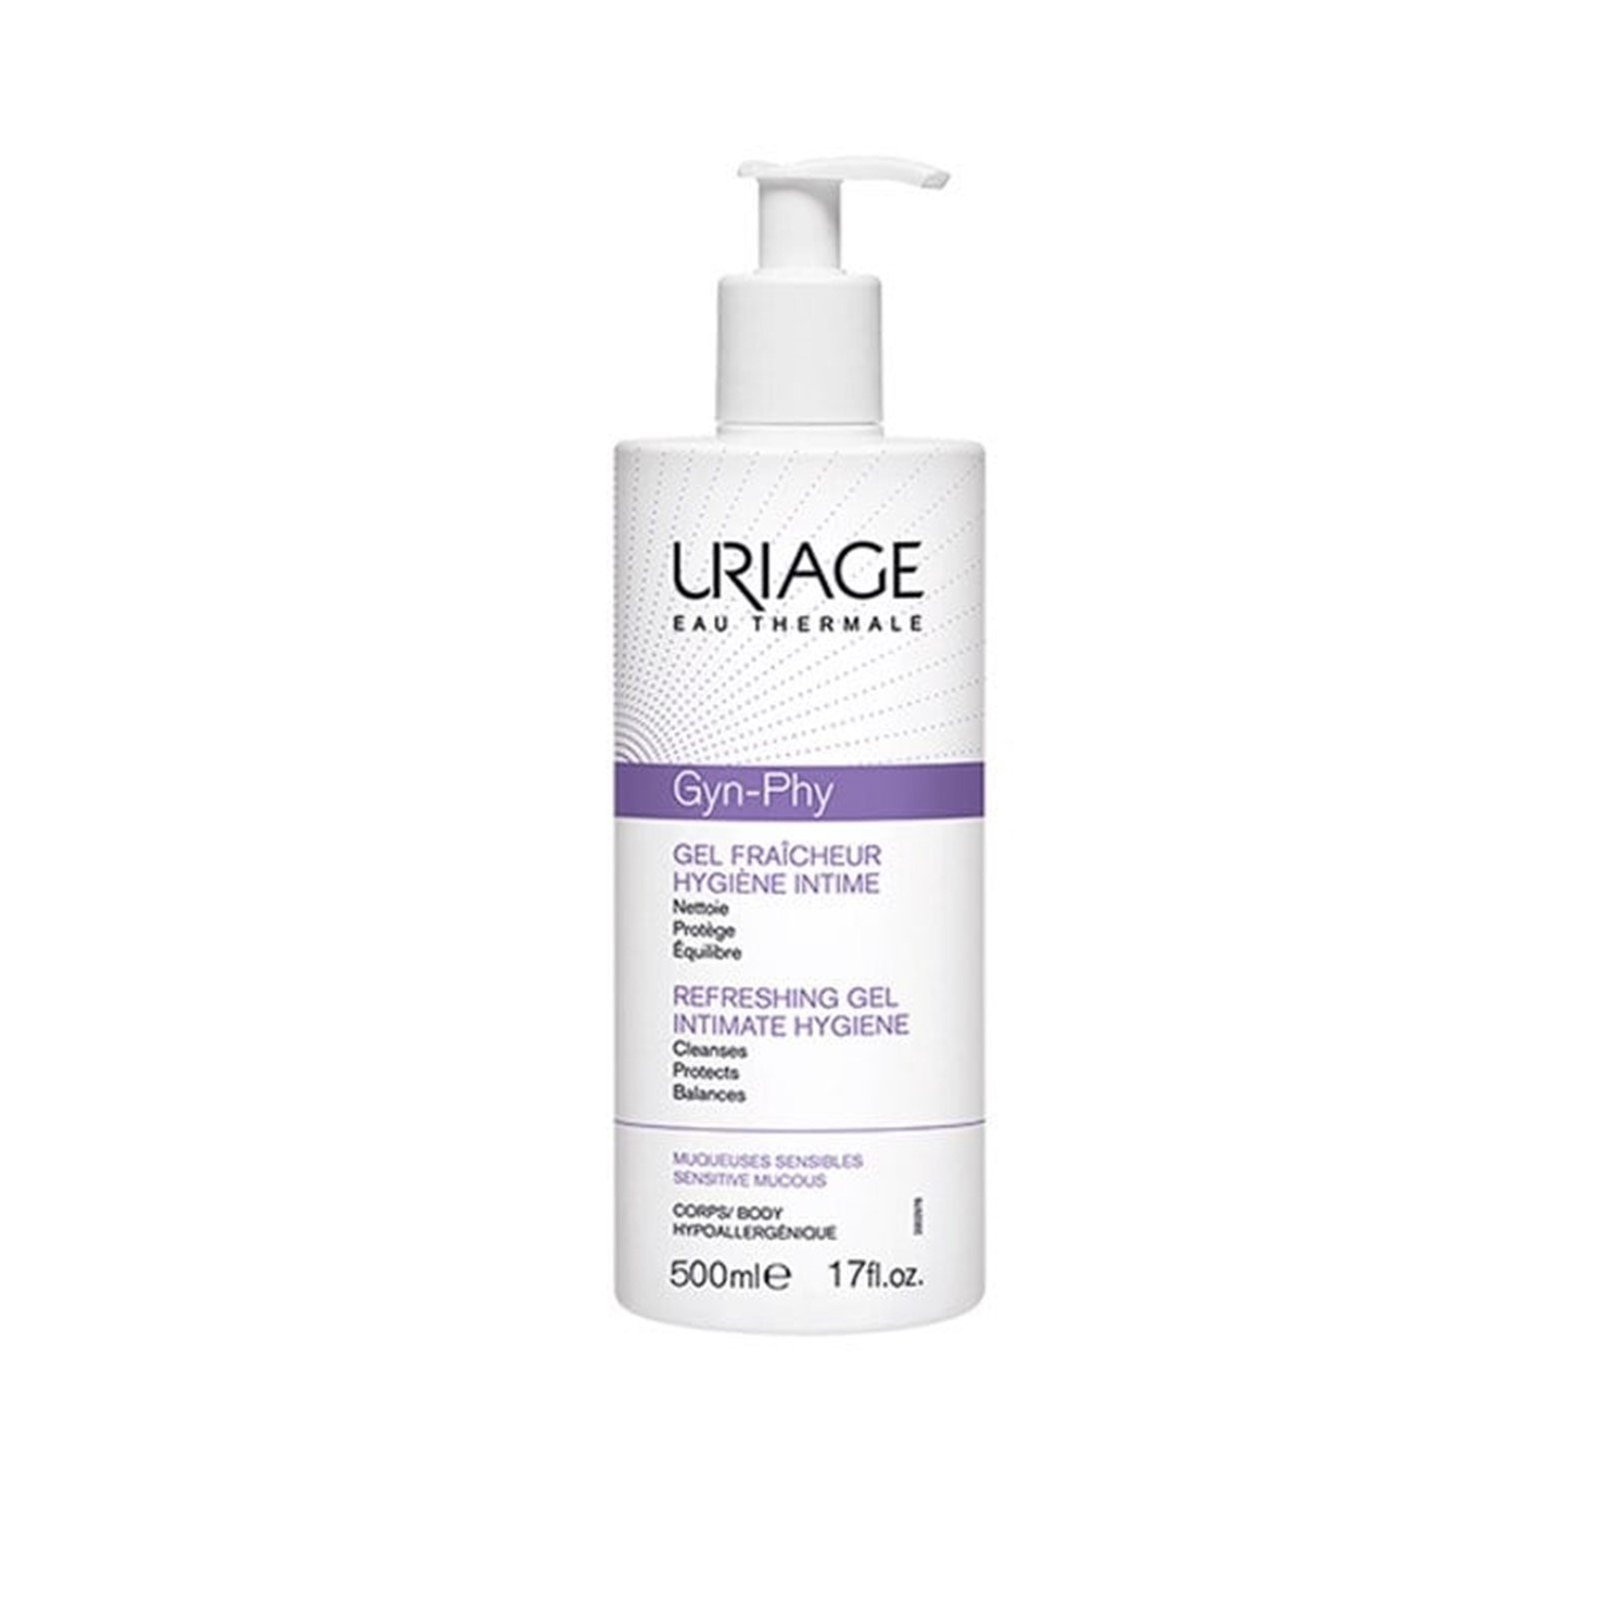 Uriage Gyn-Phy Intimate Hygiene Refreshing Gel 500ml (16.91fl oz)